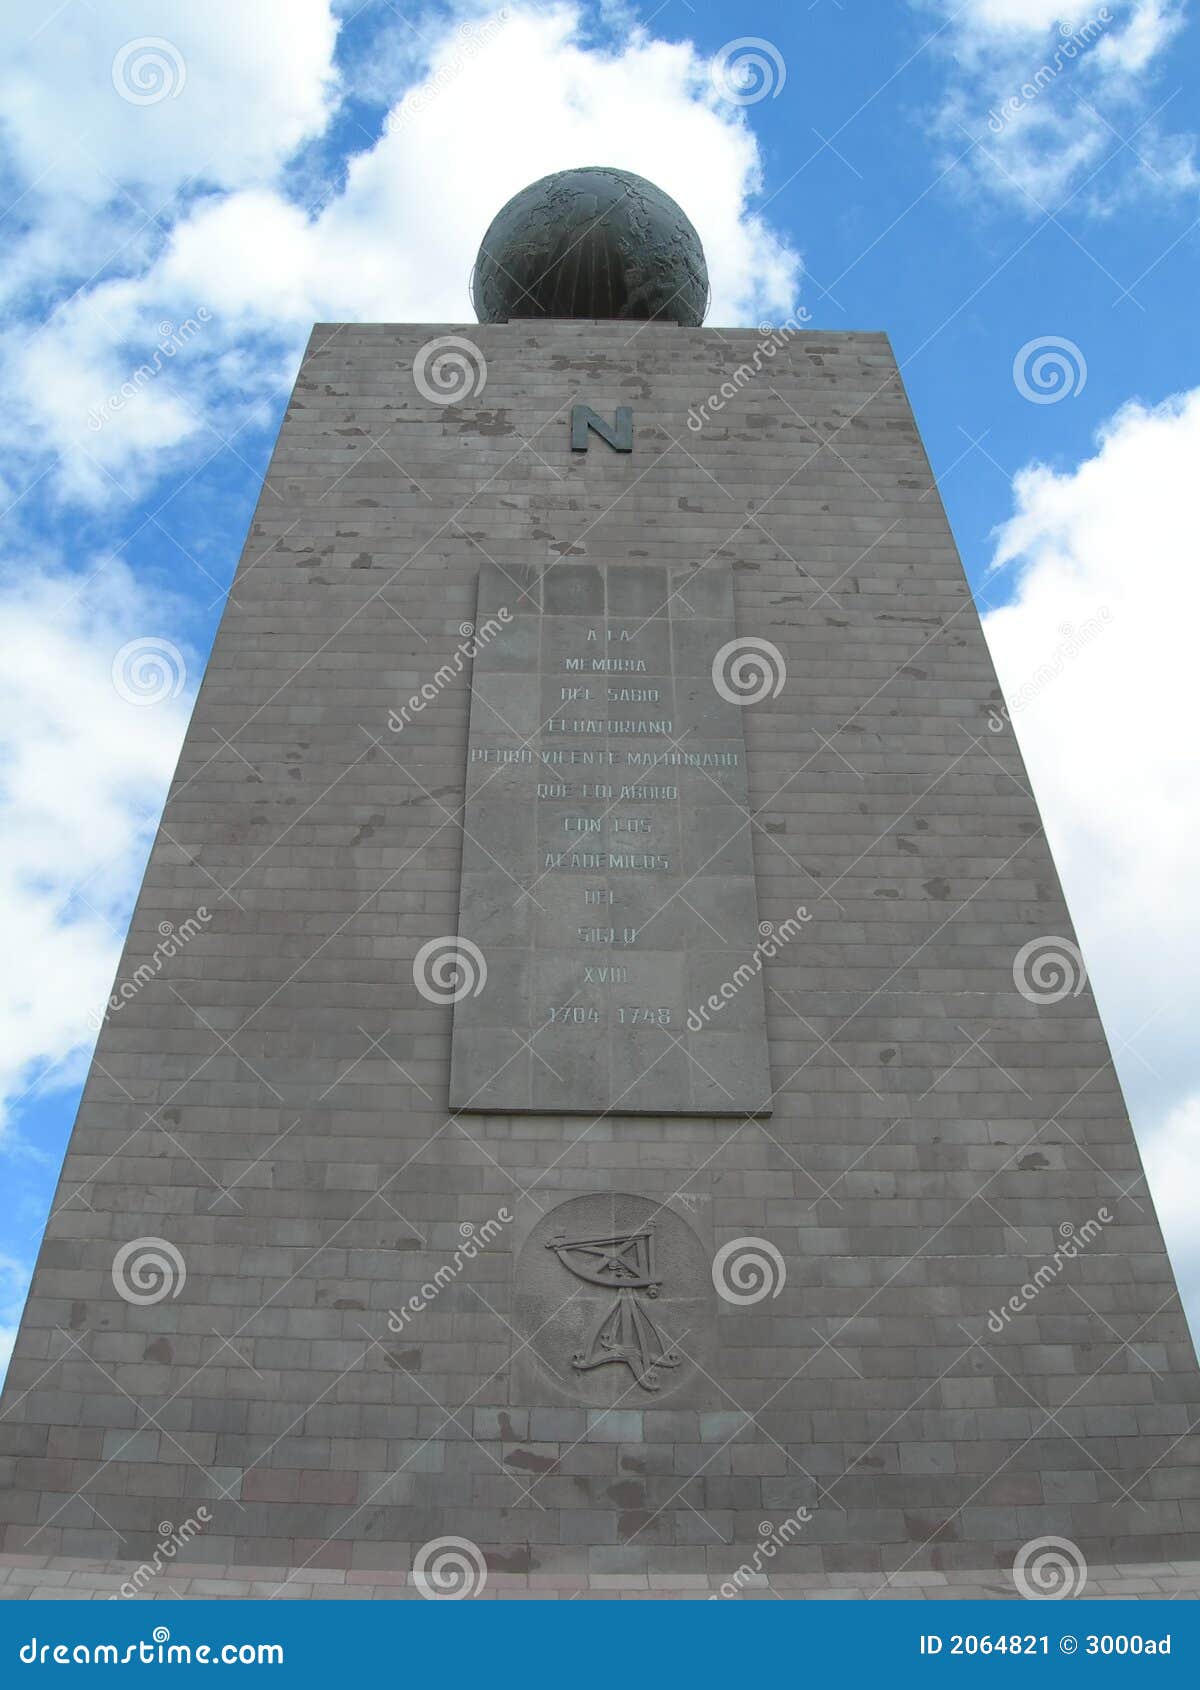 equator monument